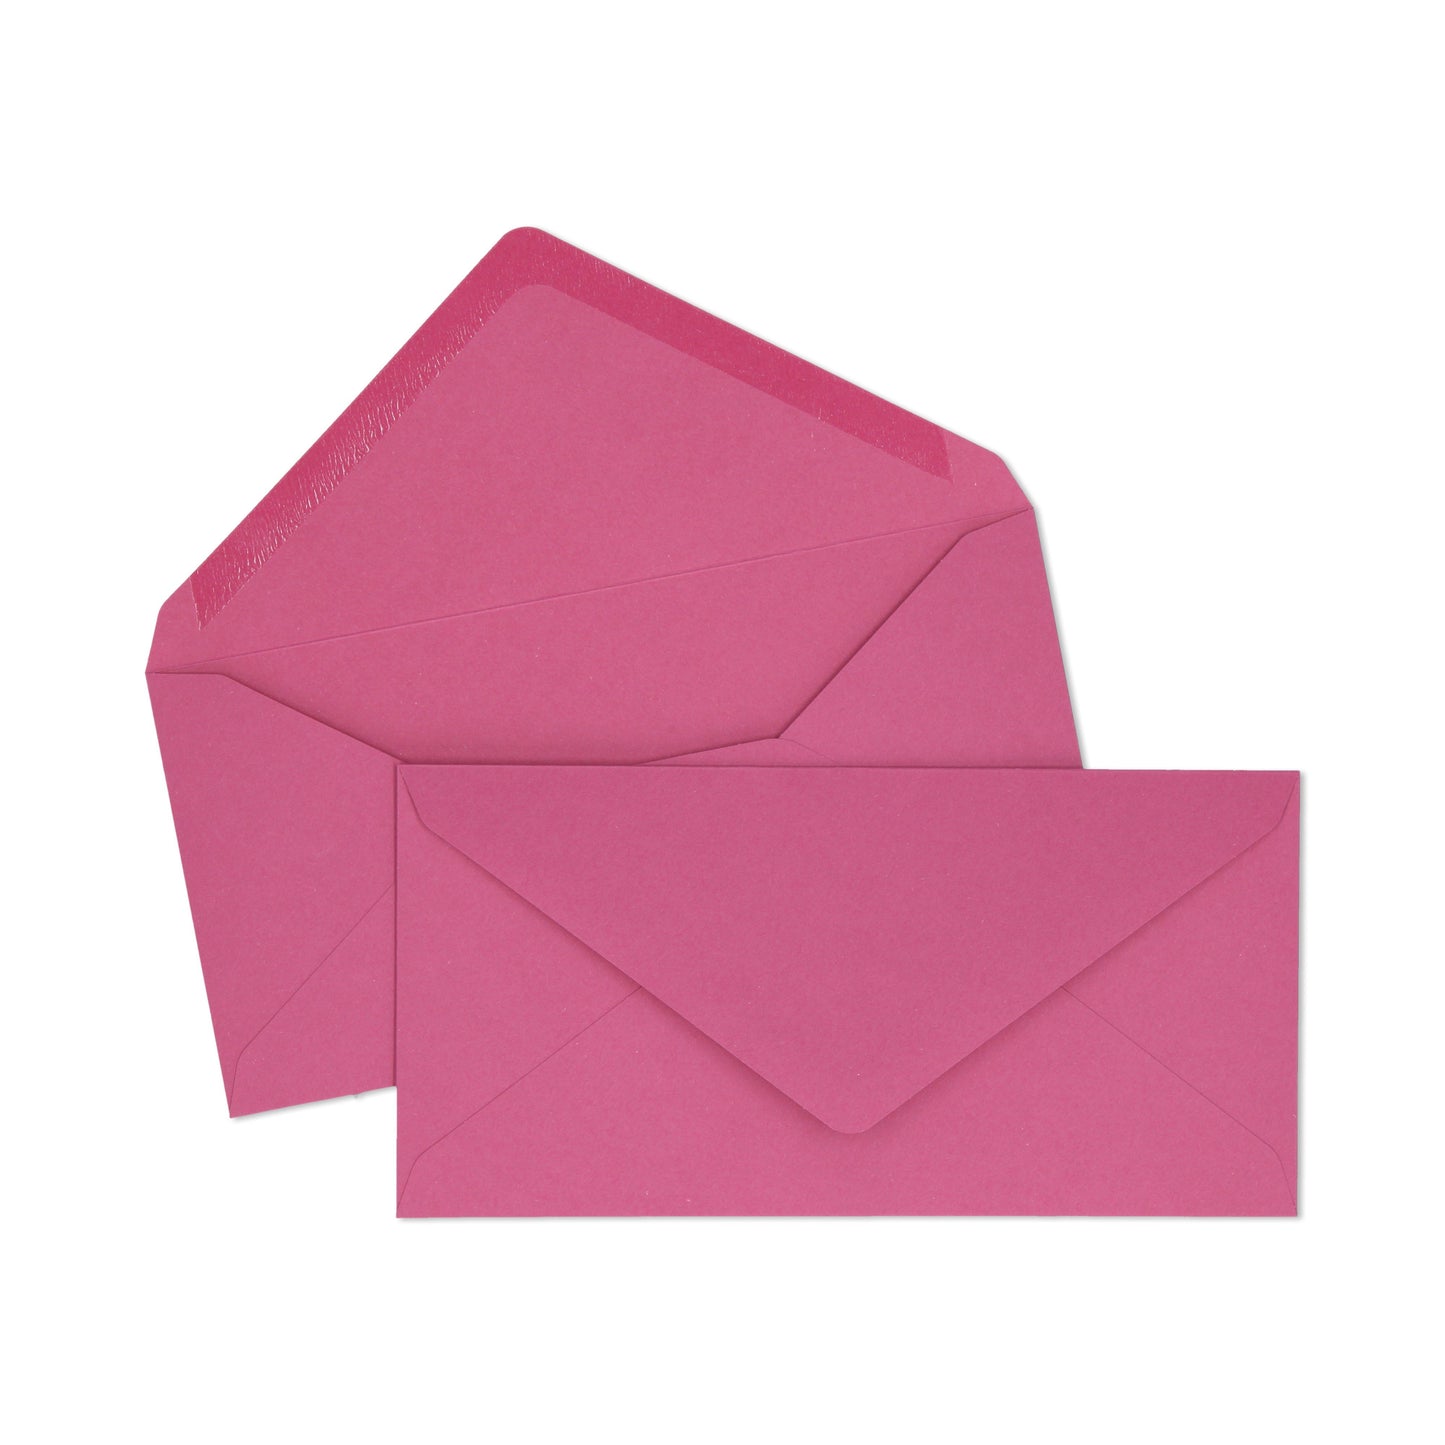 DL Purple Envelope - 10 units